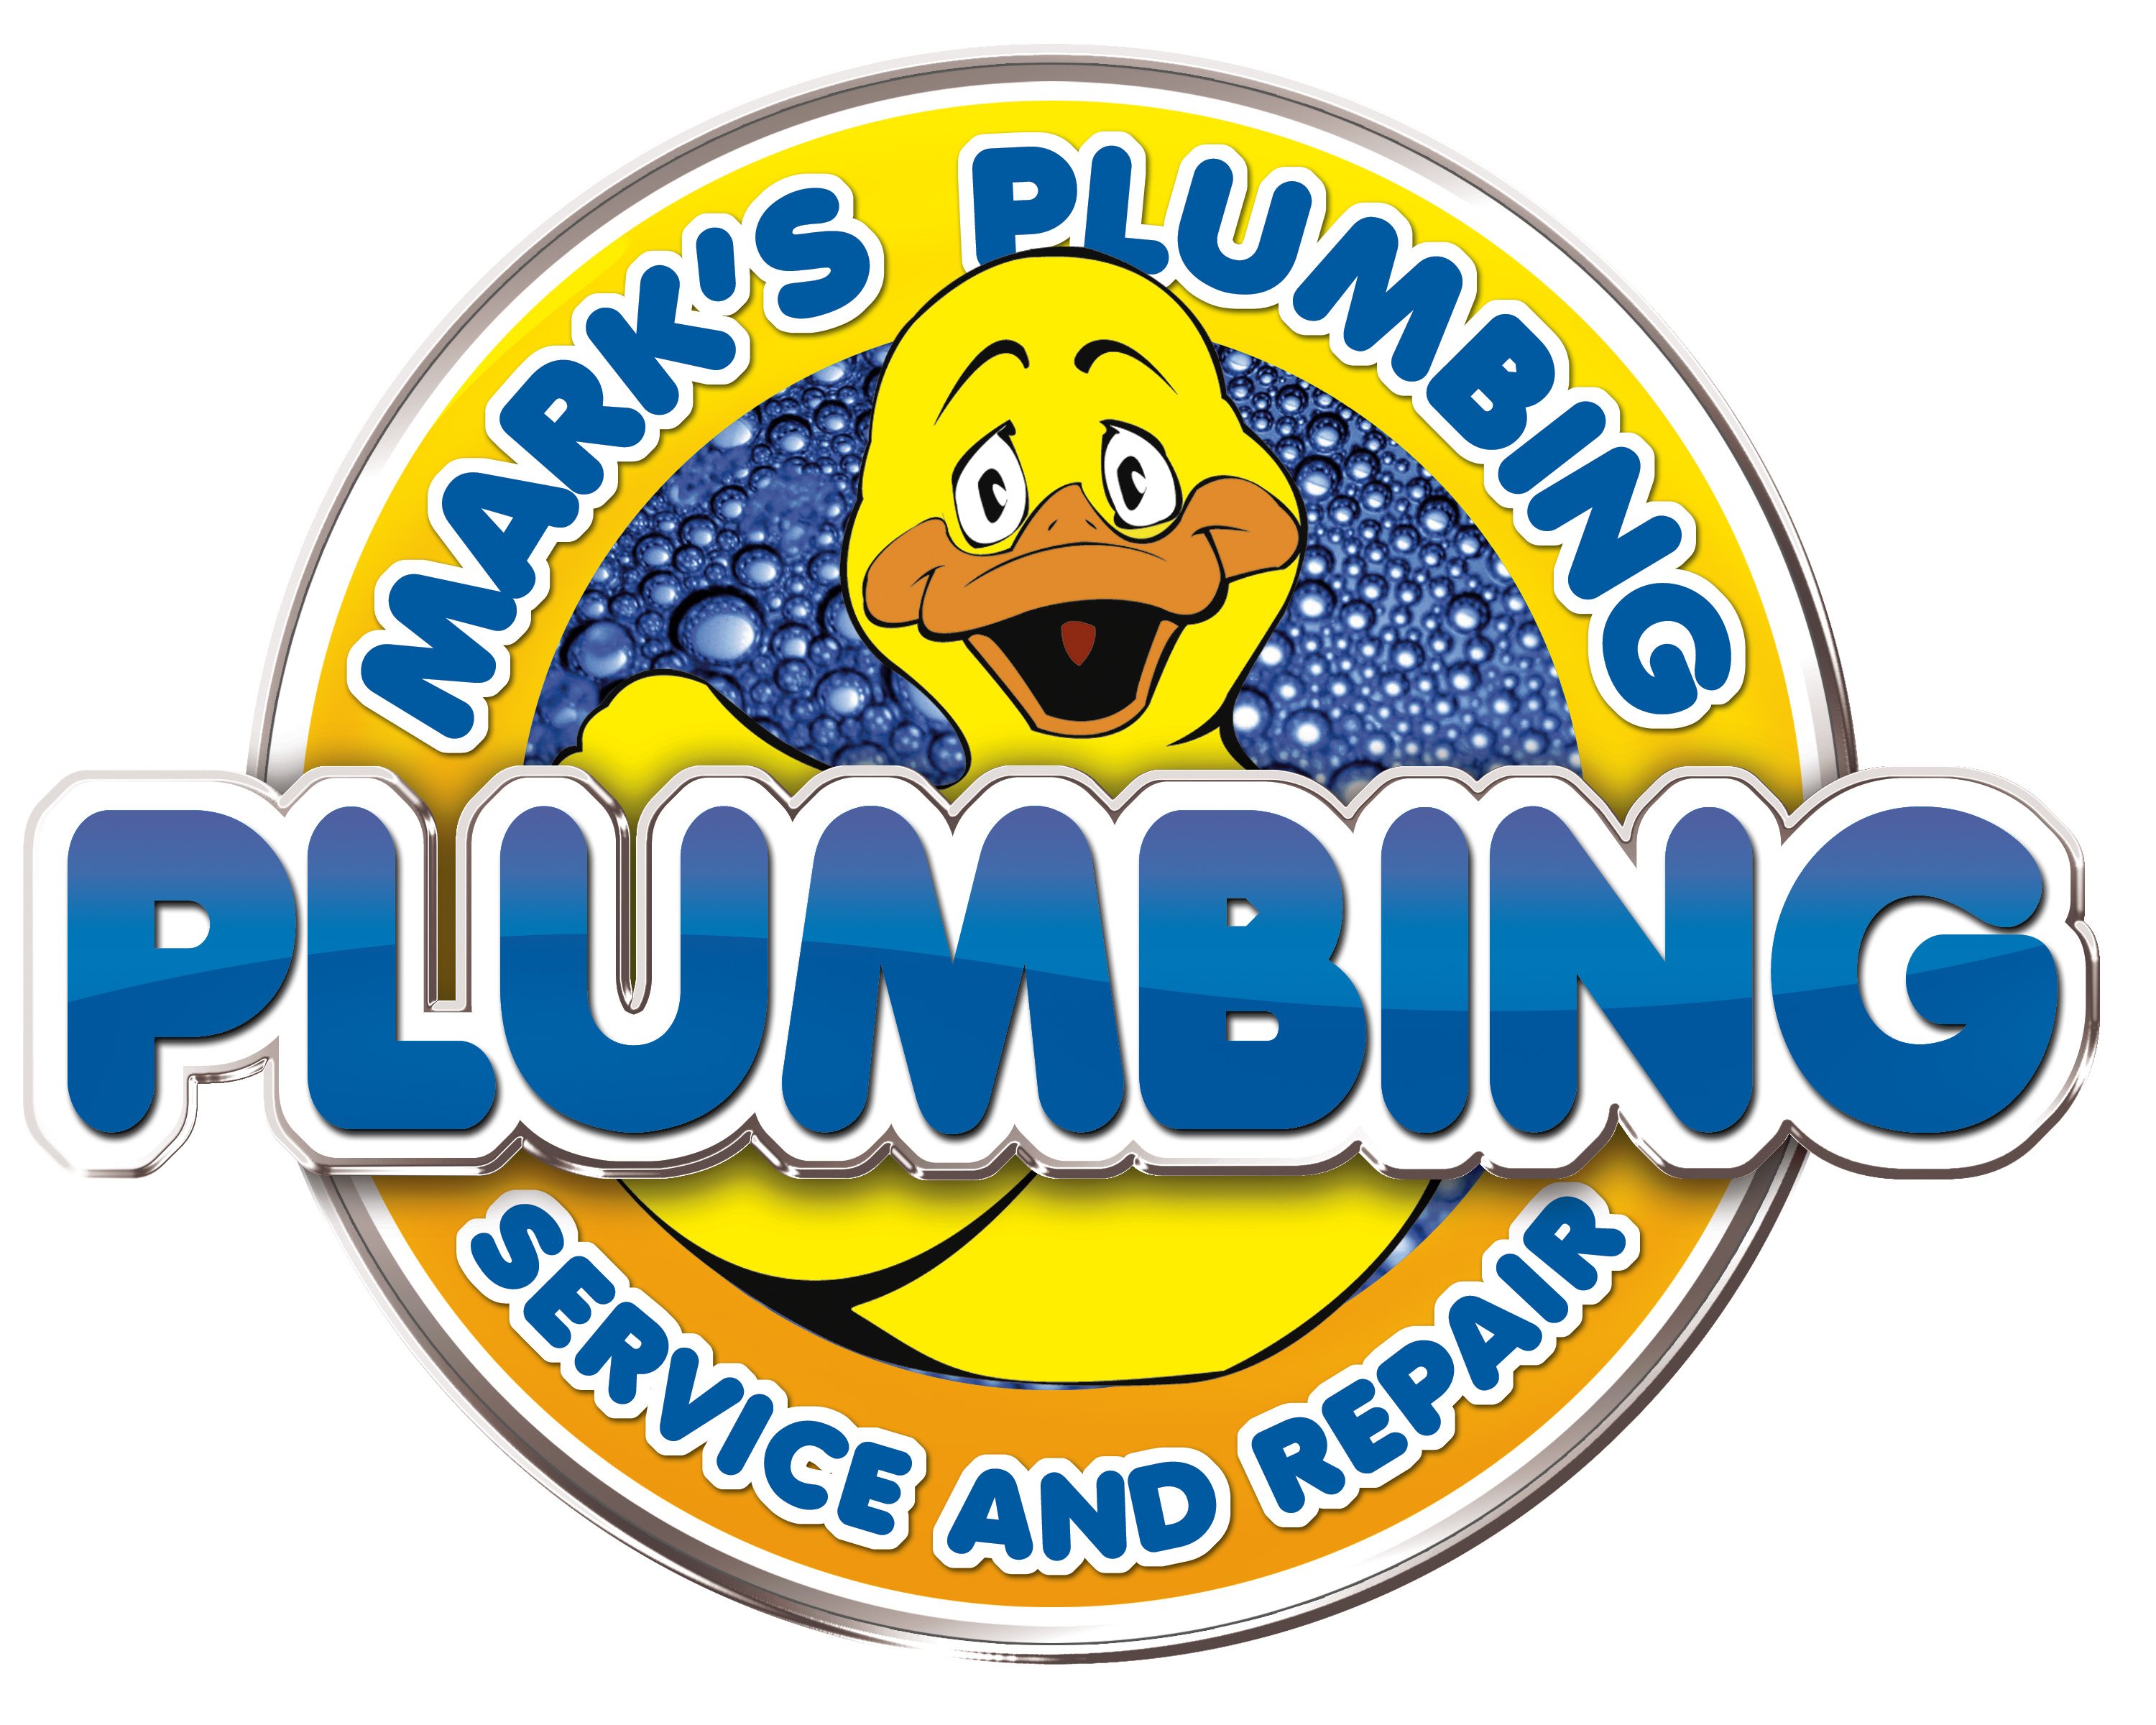 Mark's Plumbing Service & Repair Logo